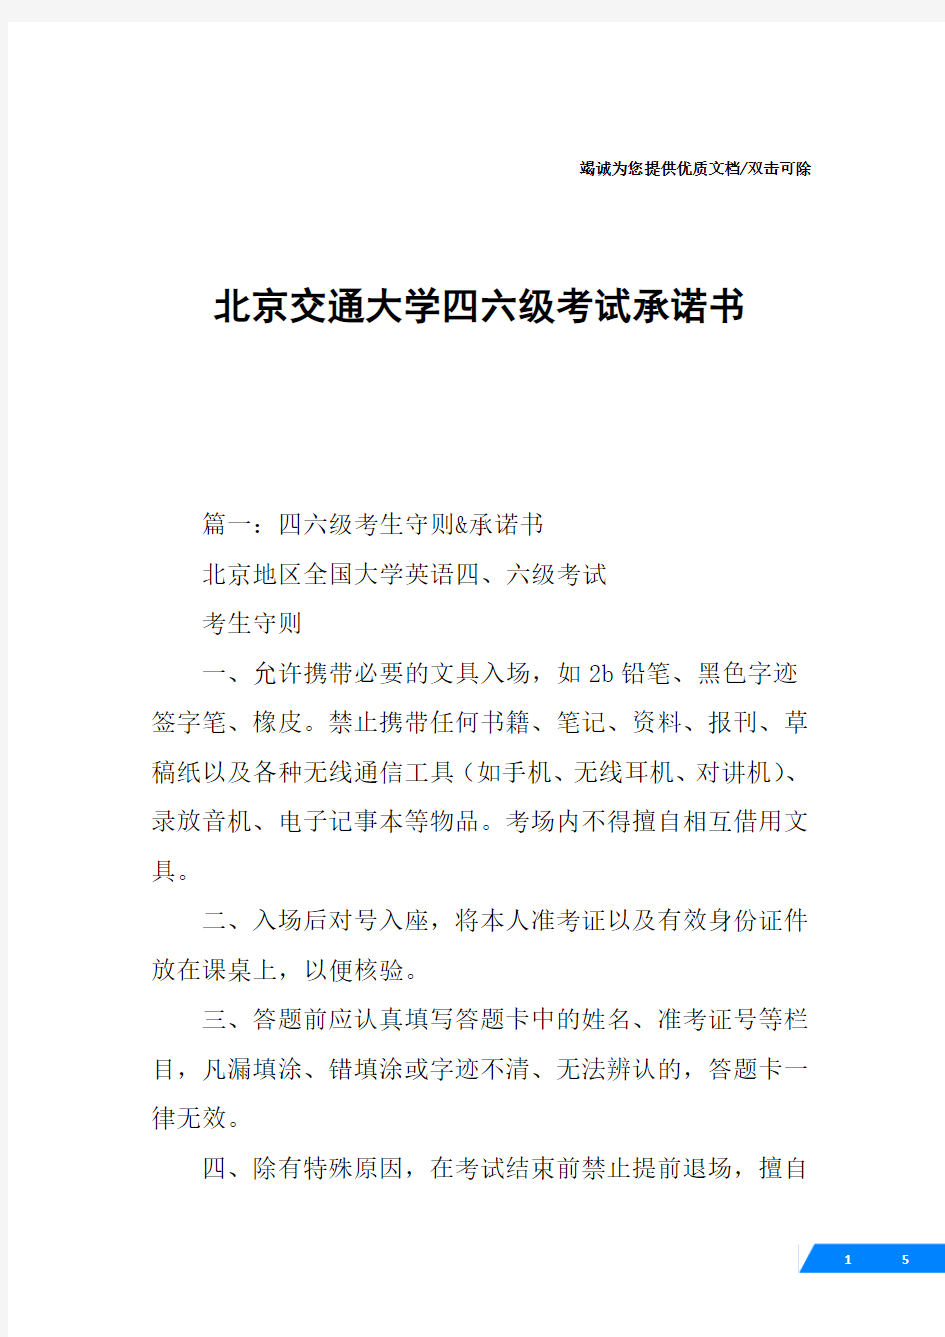 北京交通大学四六级考试承诺书